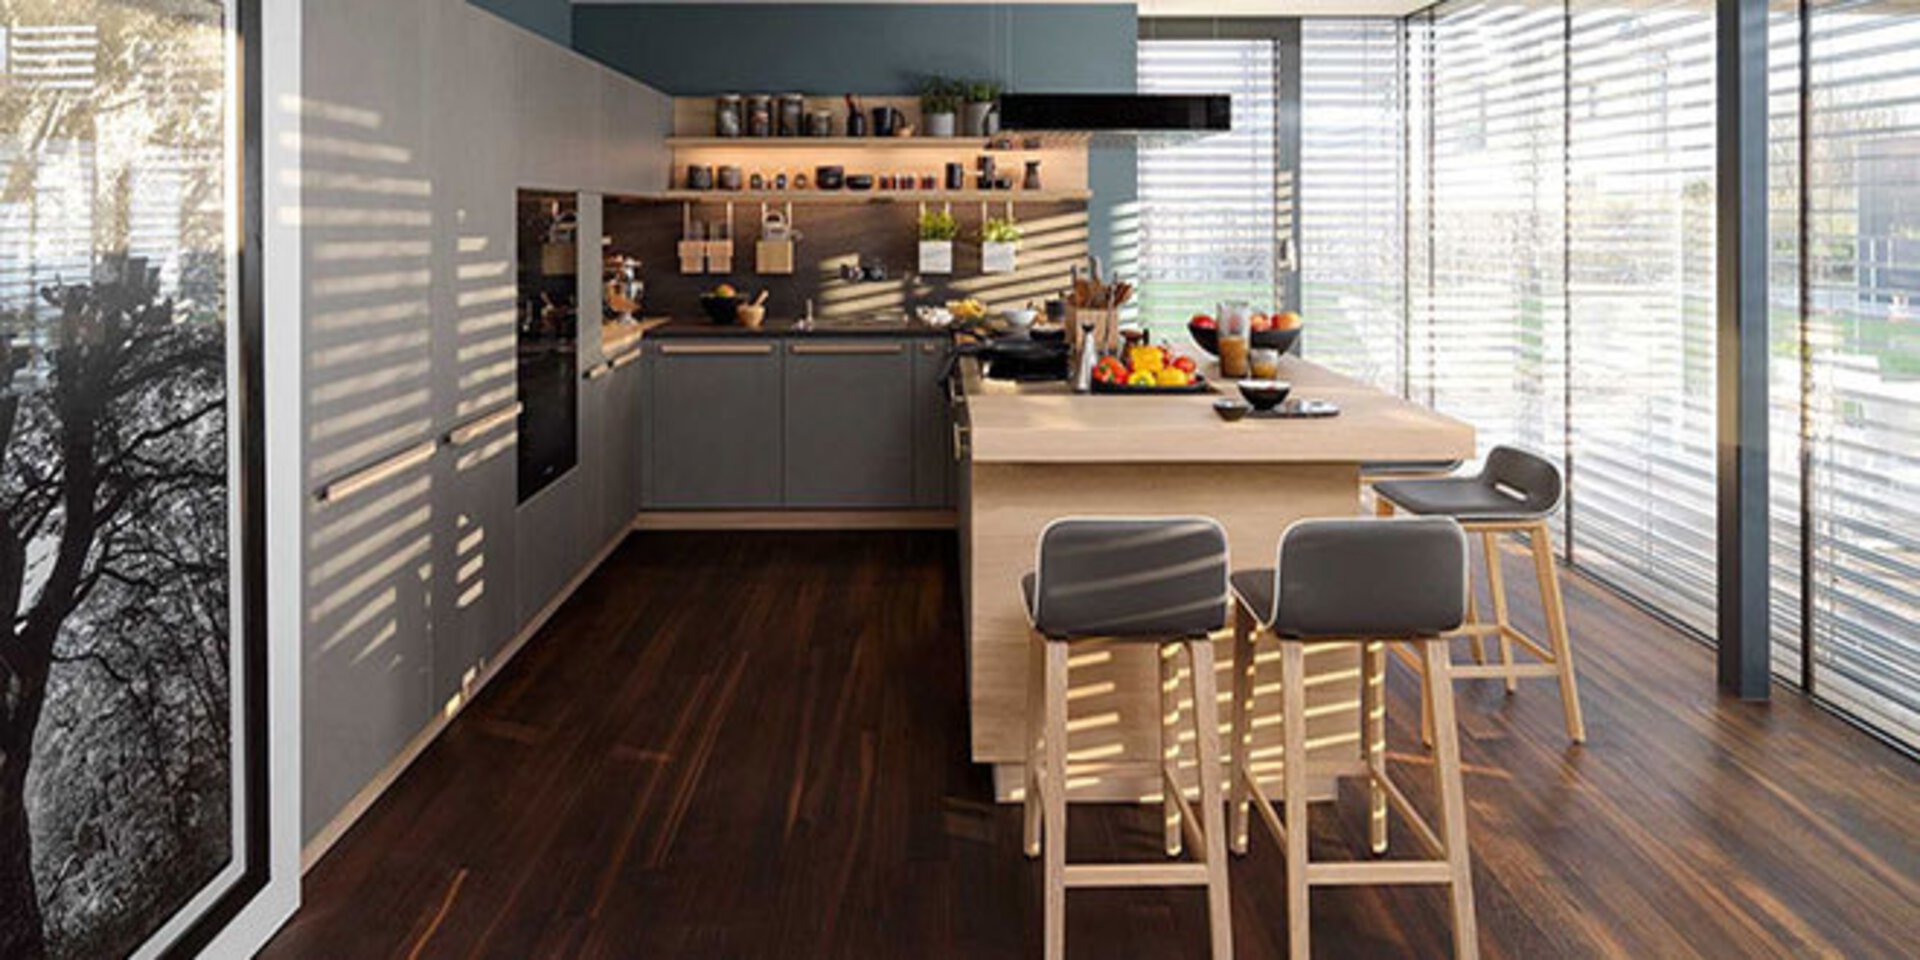 erstes Titelbild der Premiumpartner-Marke TEAM7 zeigt eine offene Küche in U-Form mit Theke und Barhockern.